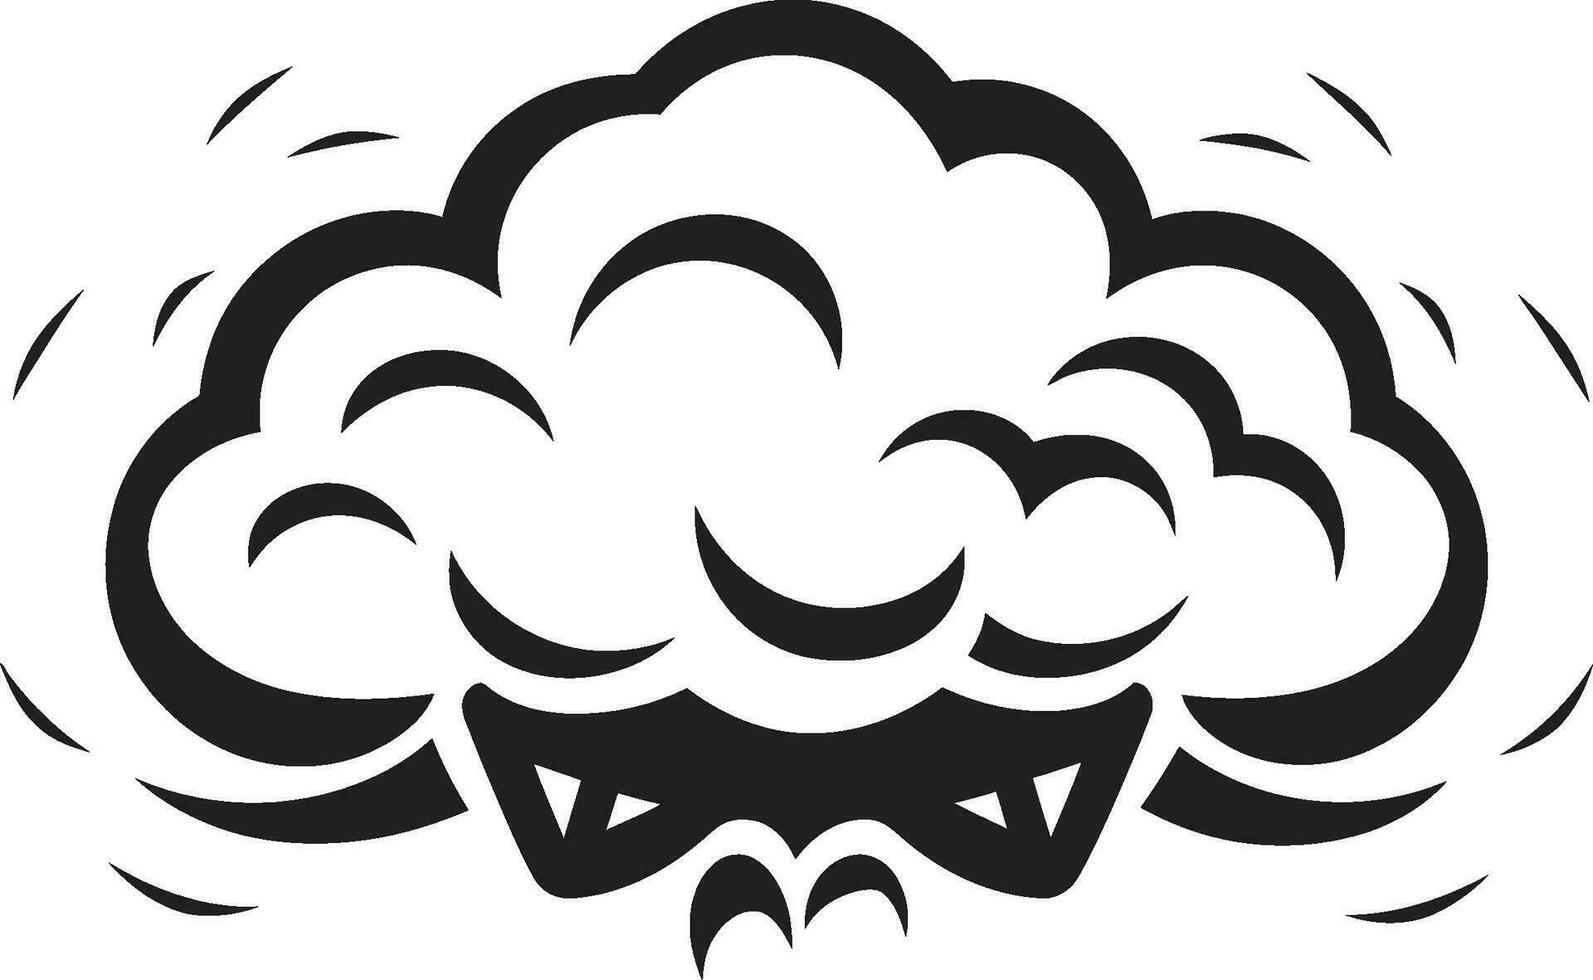 enfadado vapor negro enojado nube emblema atronador humo enojado dibujos animados nube logo vector